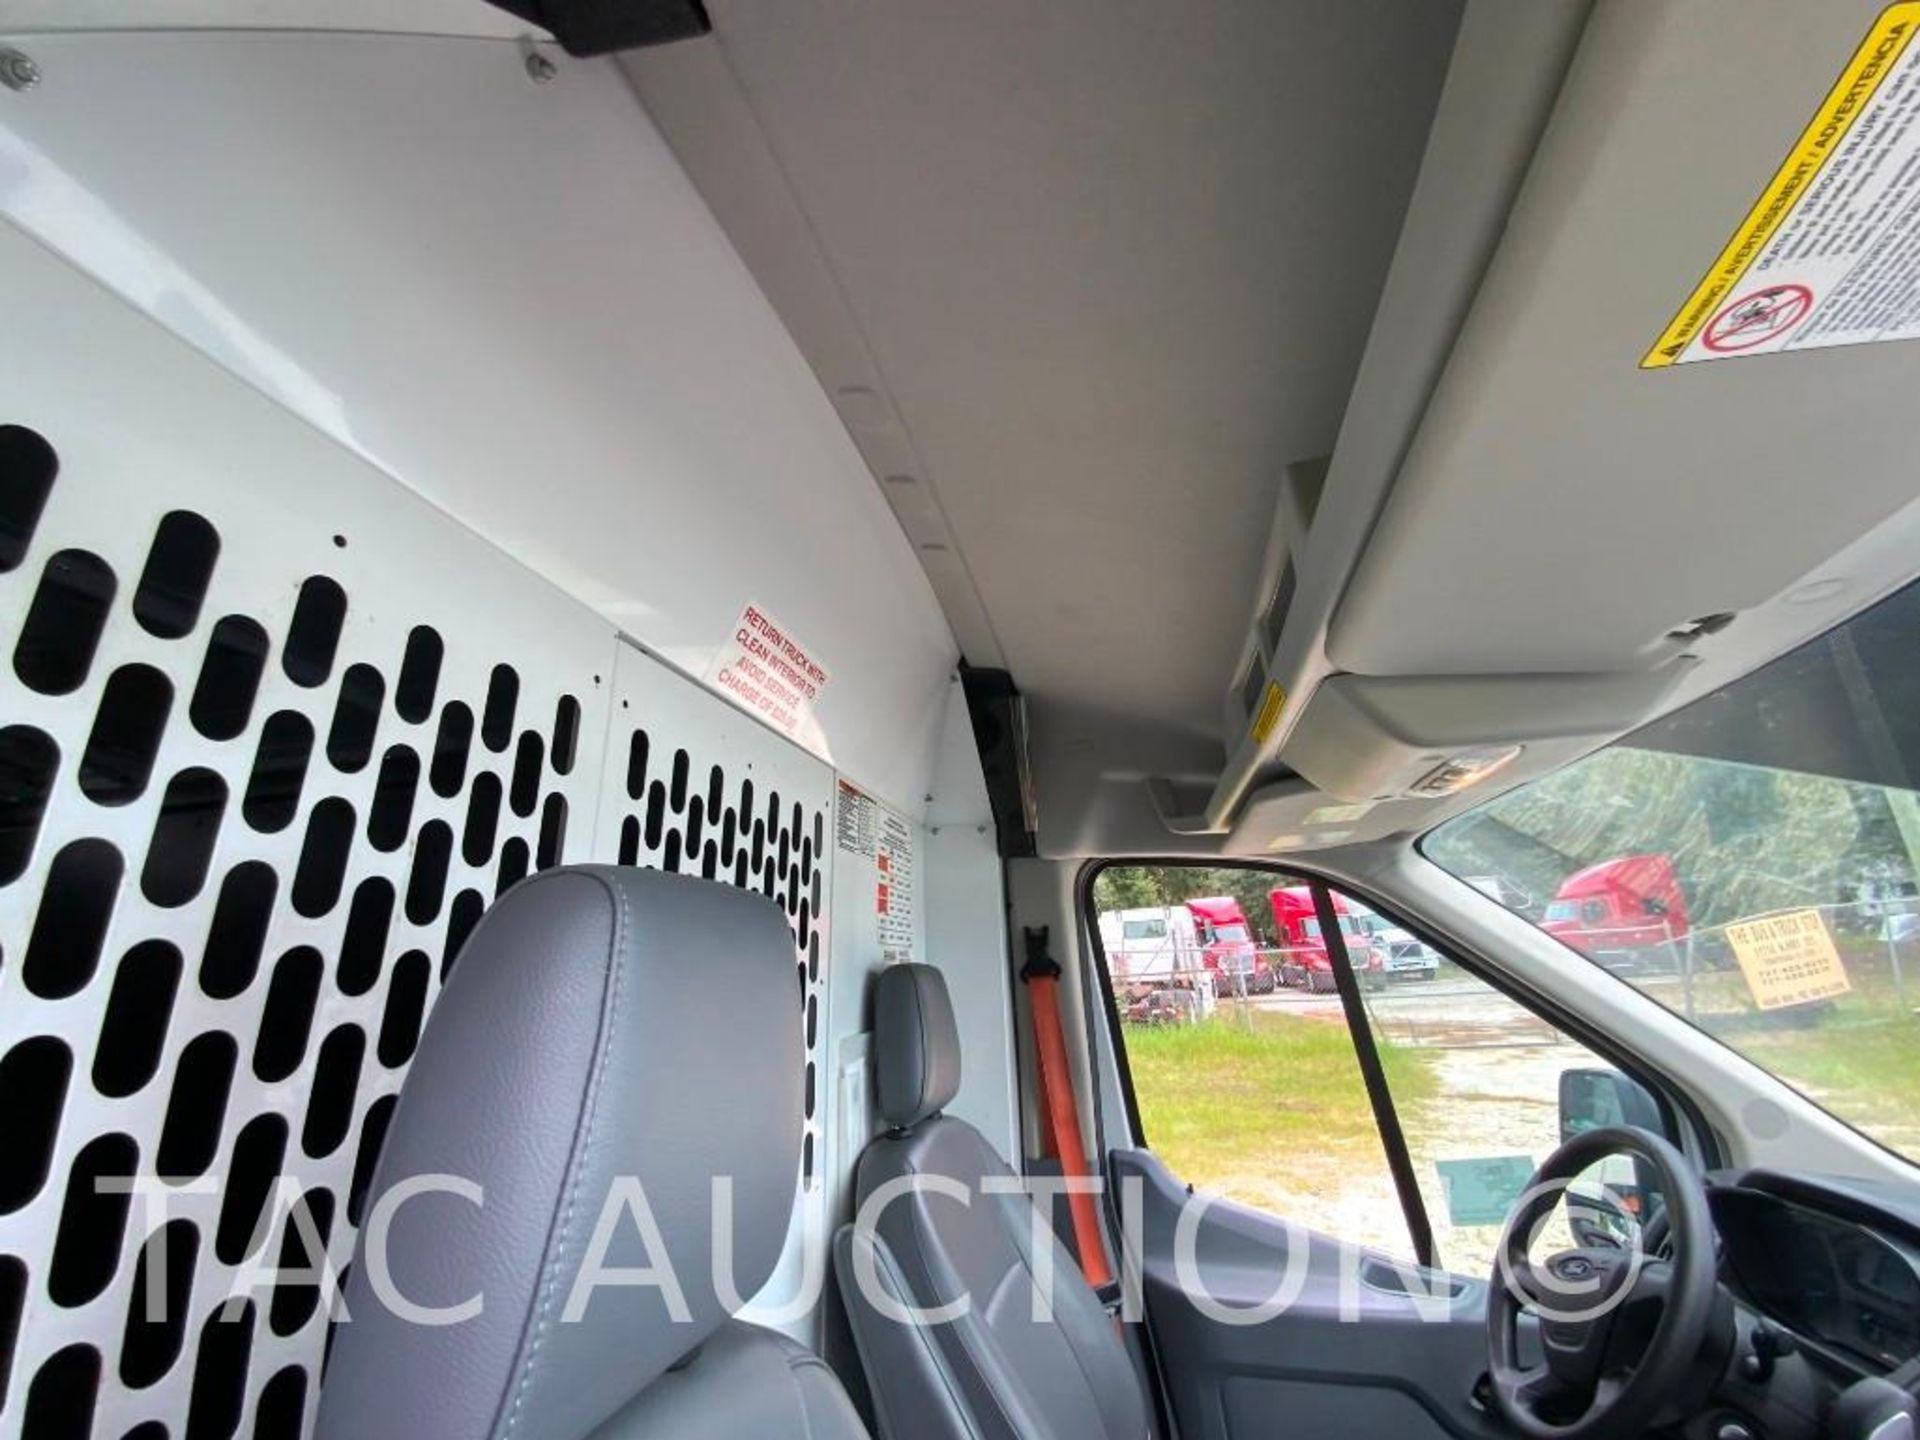 2019 Ford Transit 150 Cargo Van - Image 22 of 54